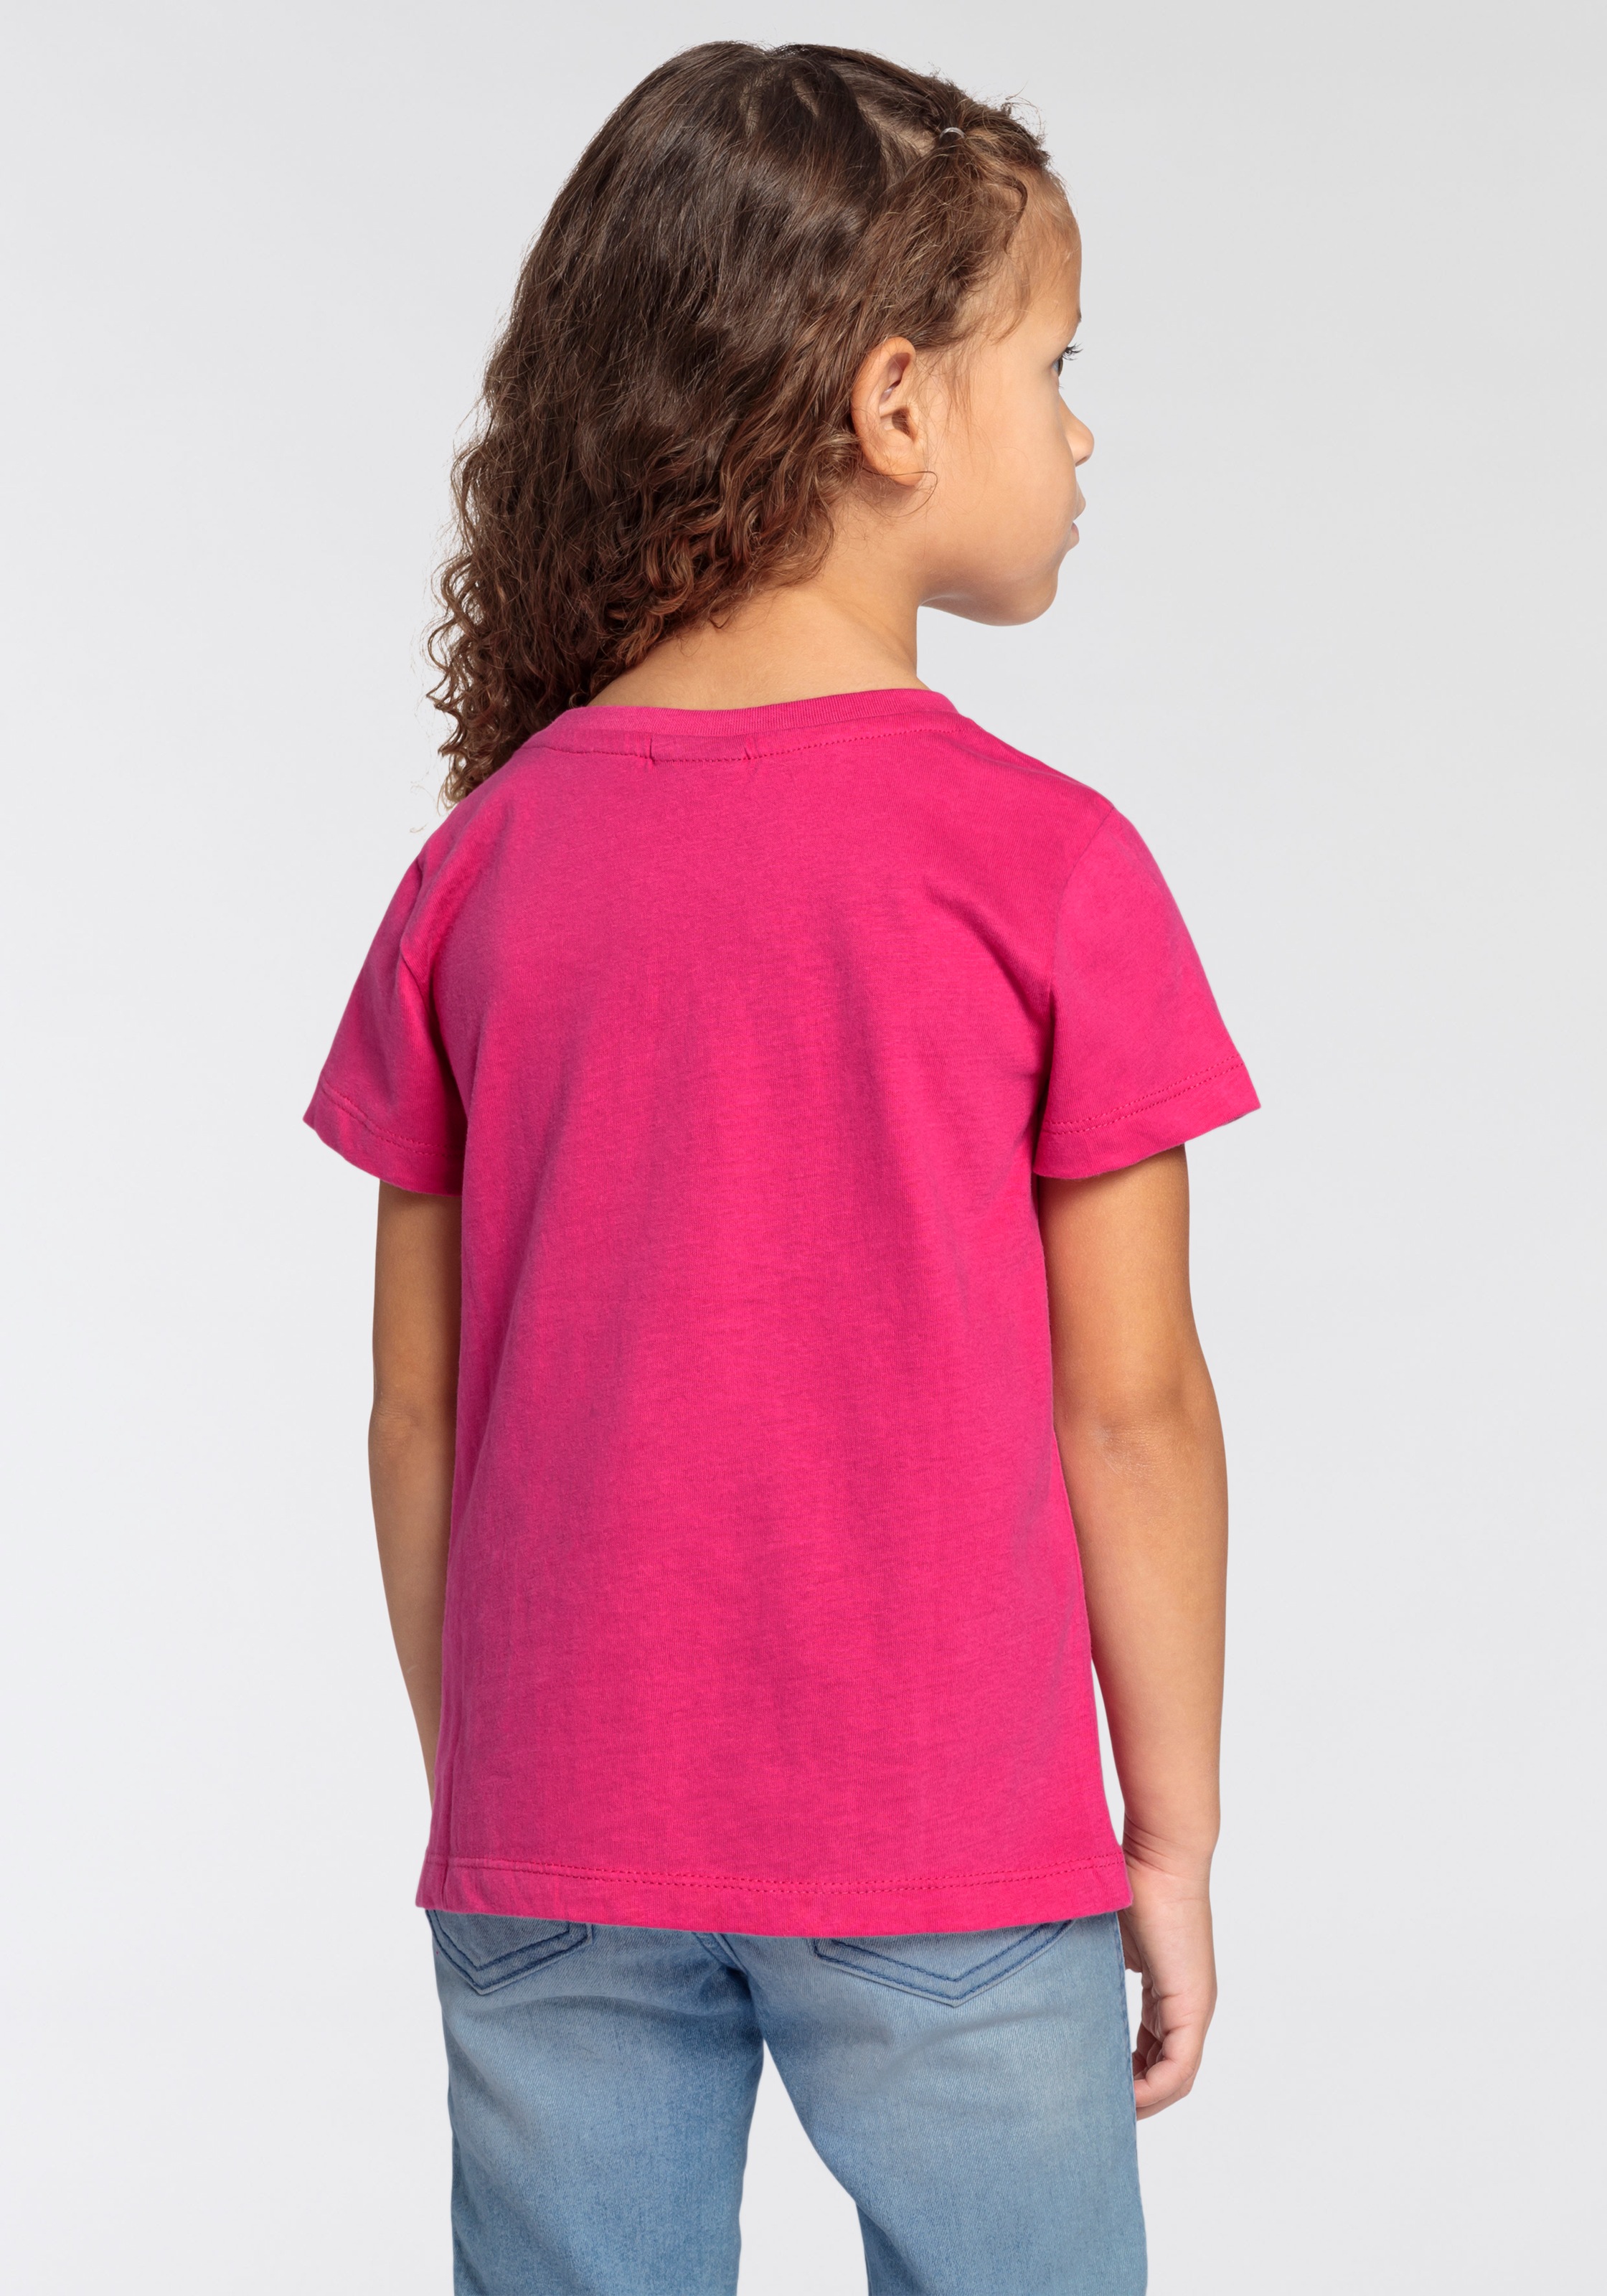 KIDSWORLD T-Shirt »Einhorn mit Regenbogen«, für kleine Mädchen